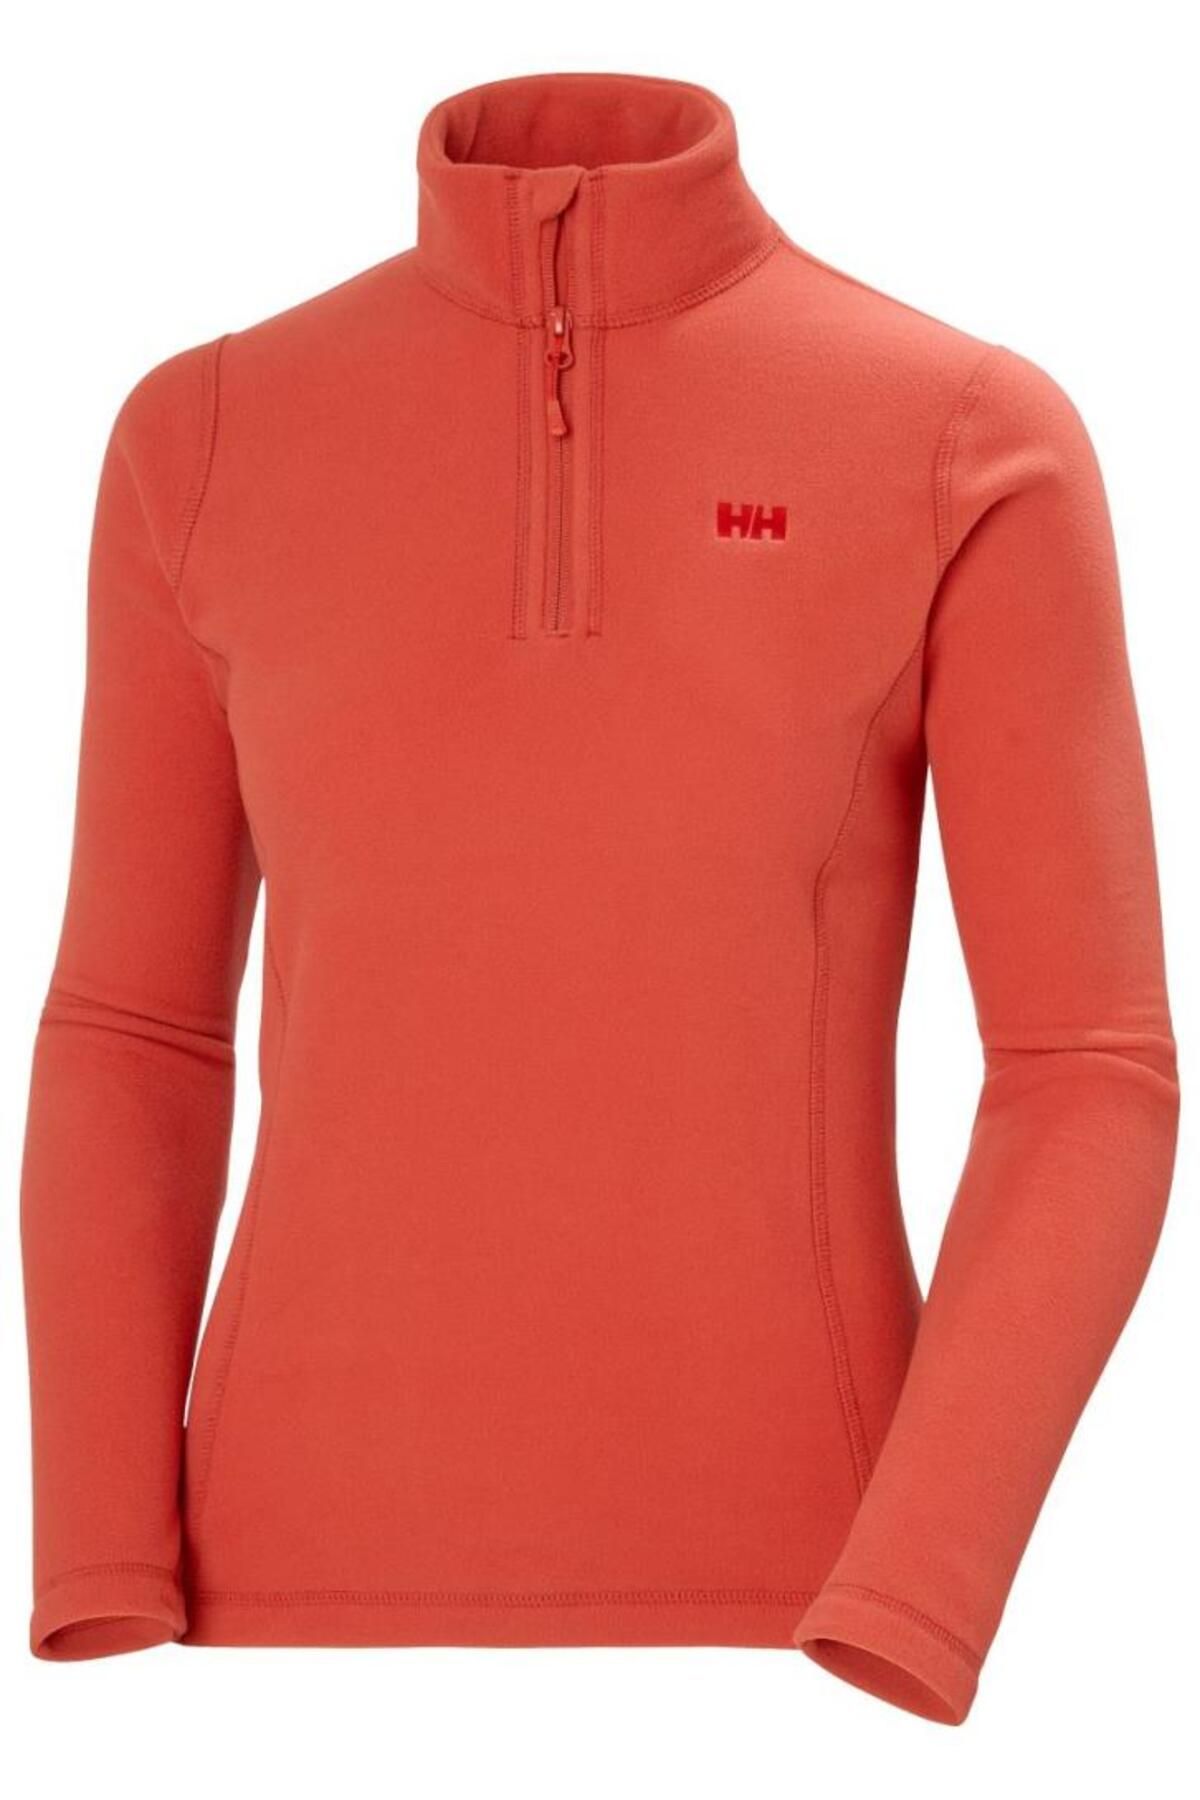 Helly Hansen Slope Fleece Kadın Yarım Fermuar Polar Kırmızı HH..15001.HHA.101